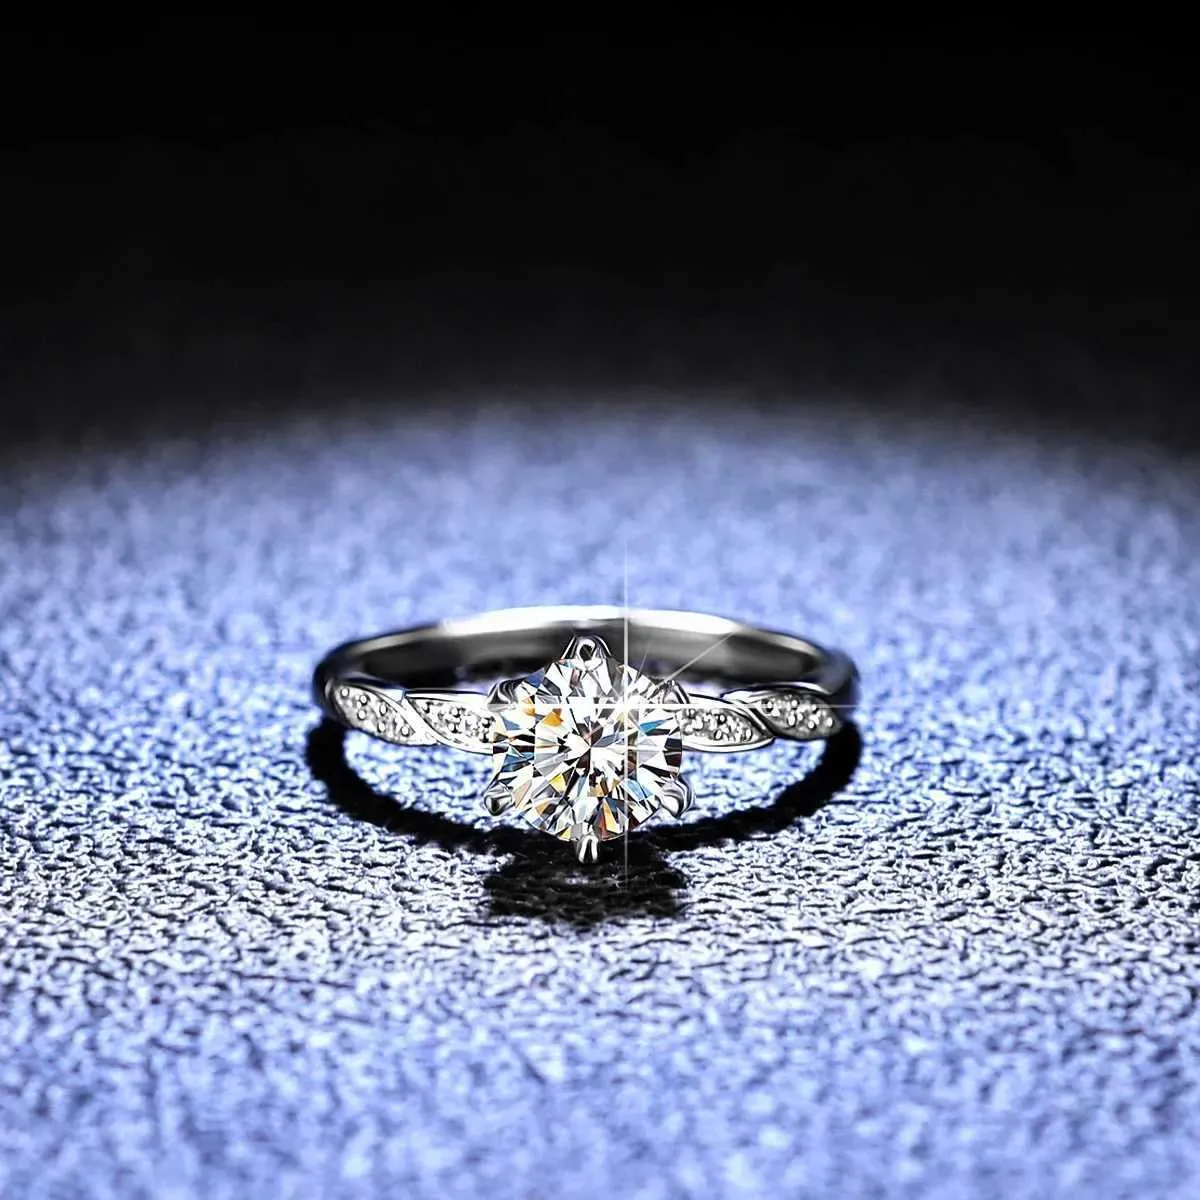 Anneaux de bande Magnifique PT950 Platinum 1ct Mosilicon Diamond Ring Elegant Femme Marite Engagement Party Promed Bielry Gifts Q240429